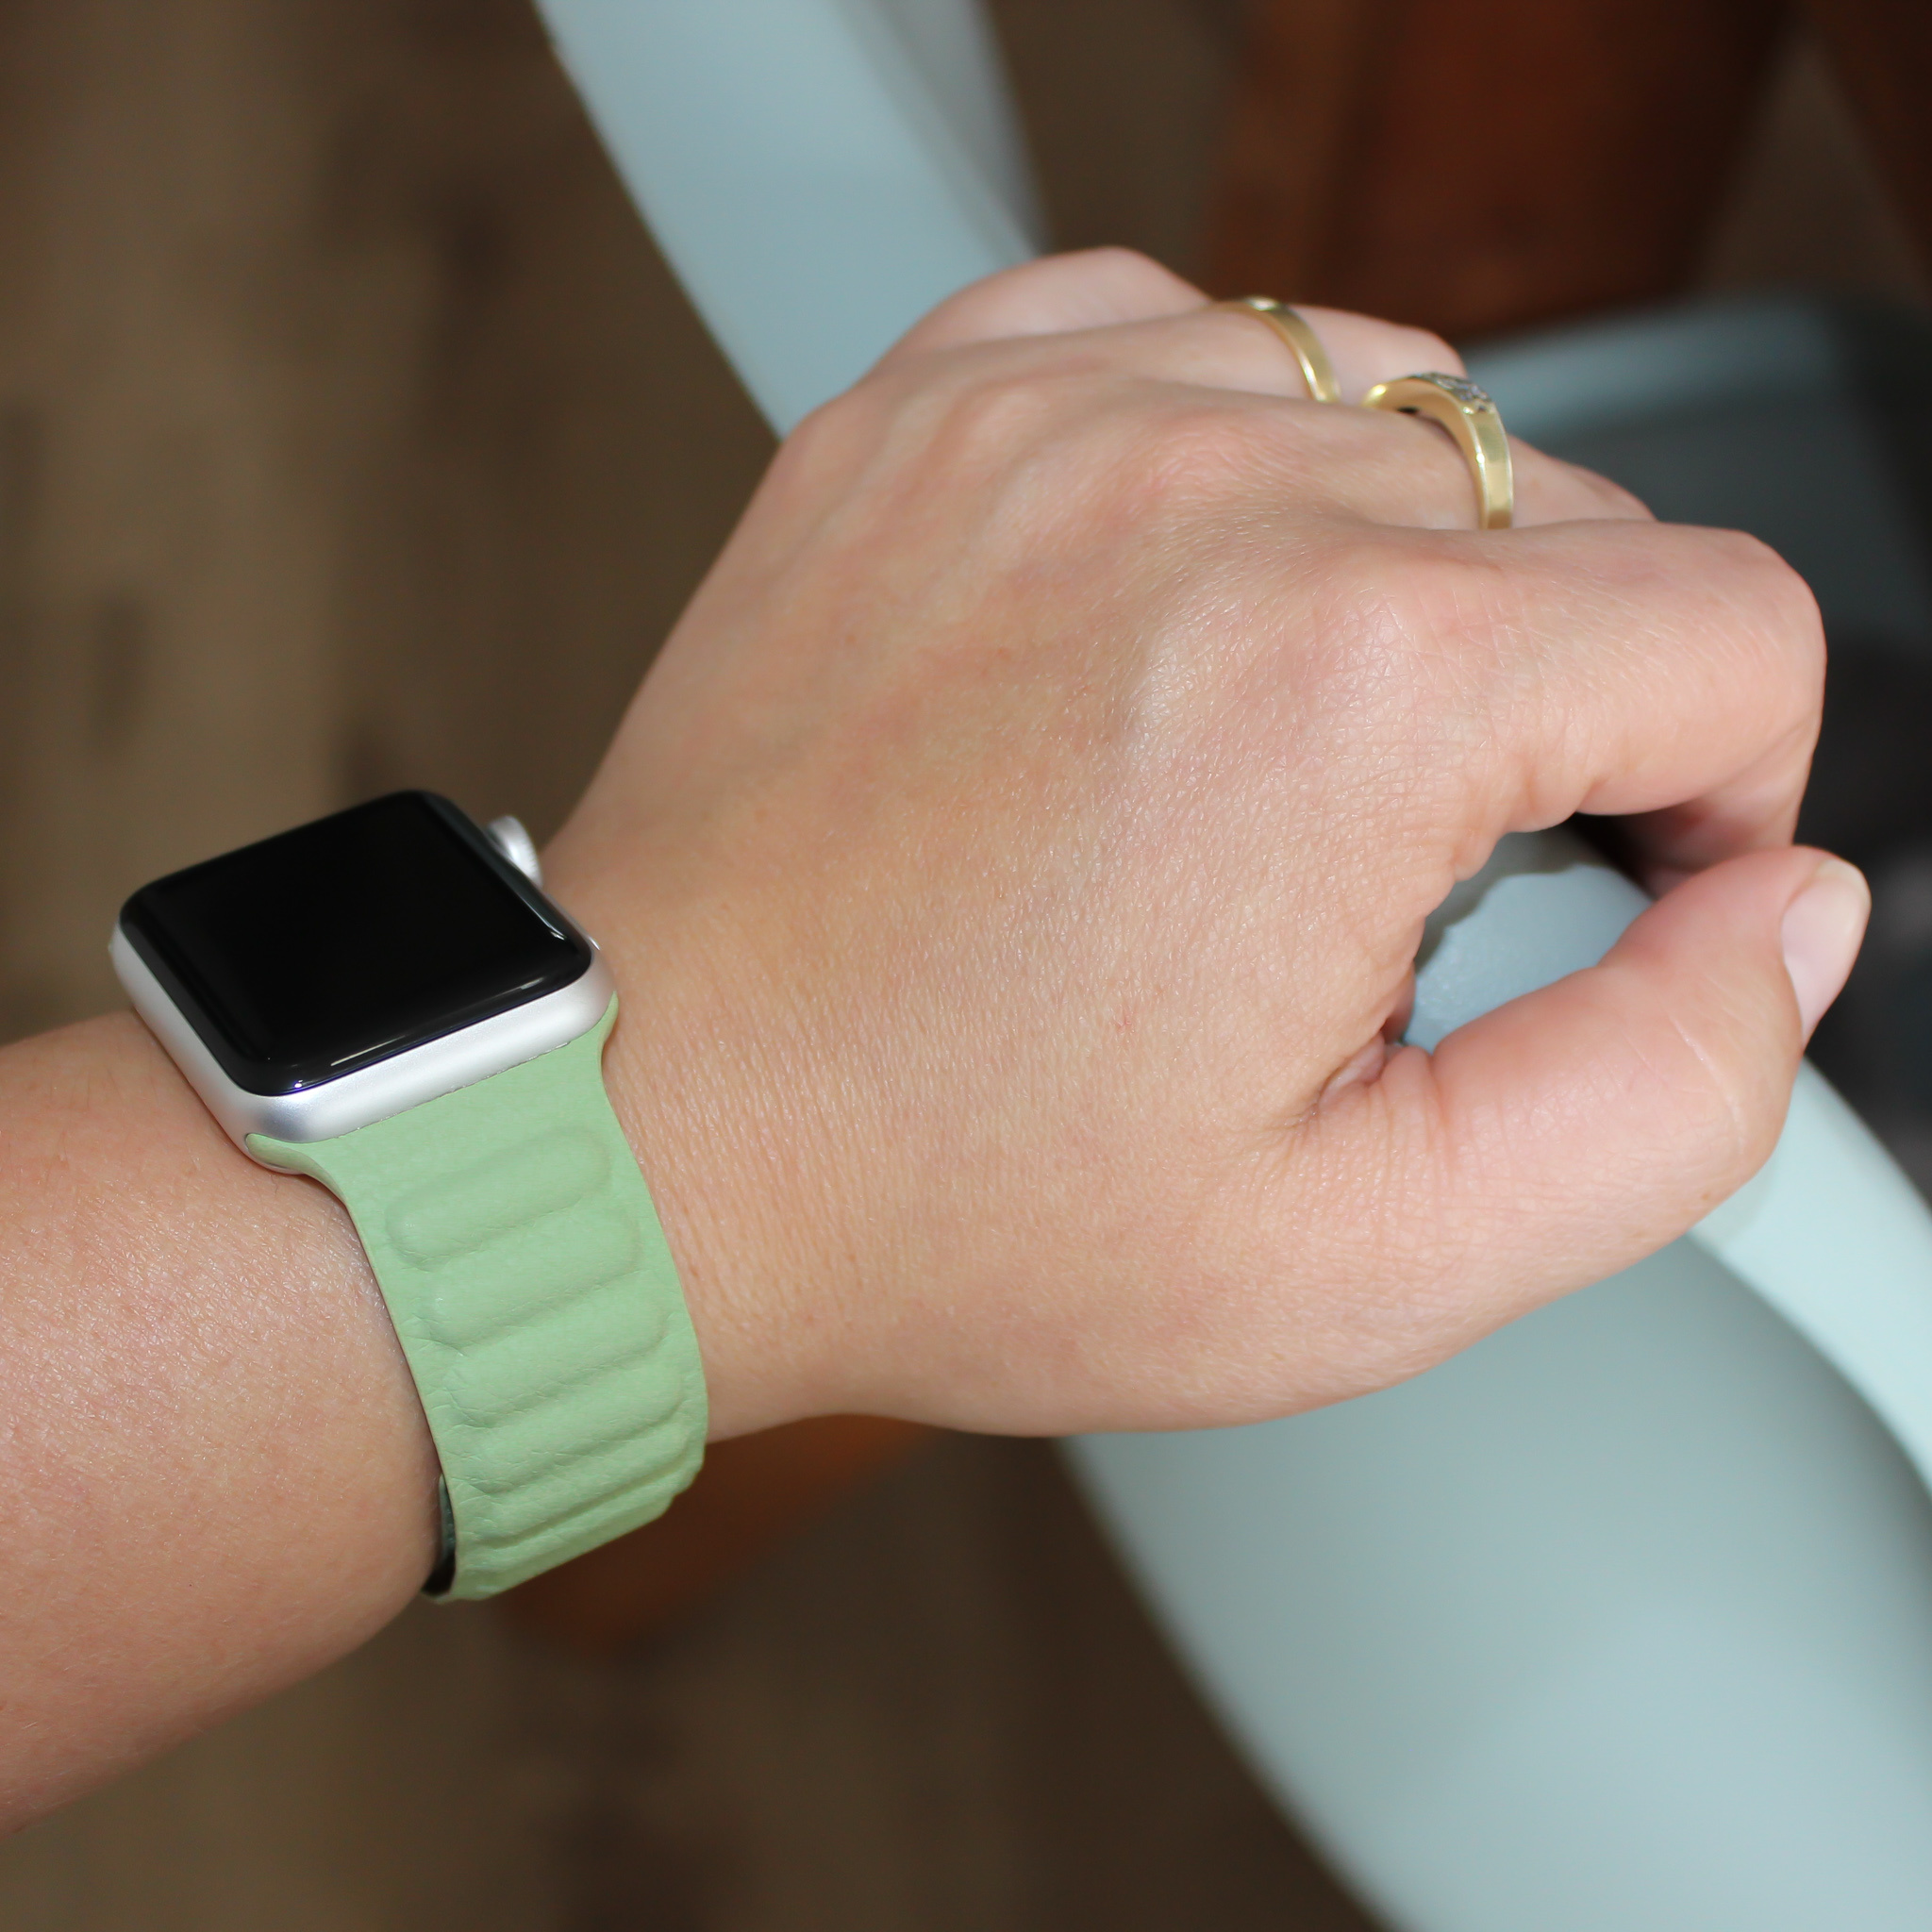  Apple Watch bőr szóló pánt - kék-zöld árnyalat